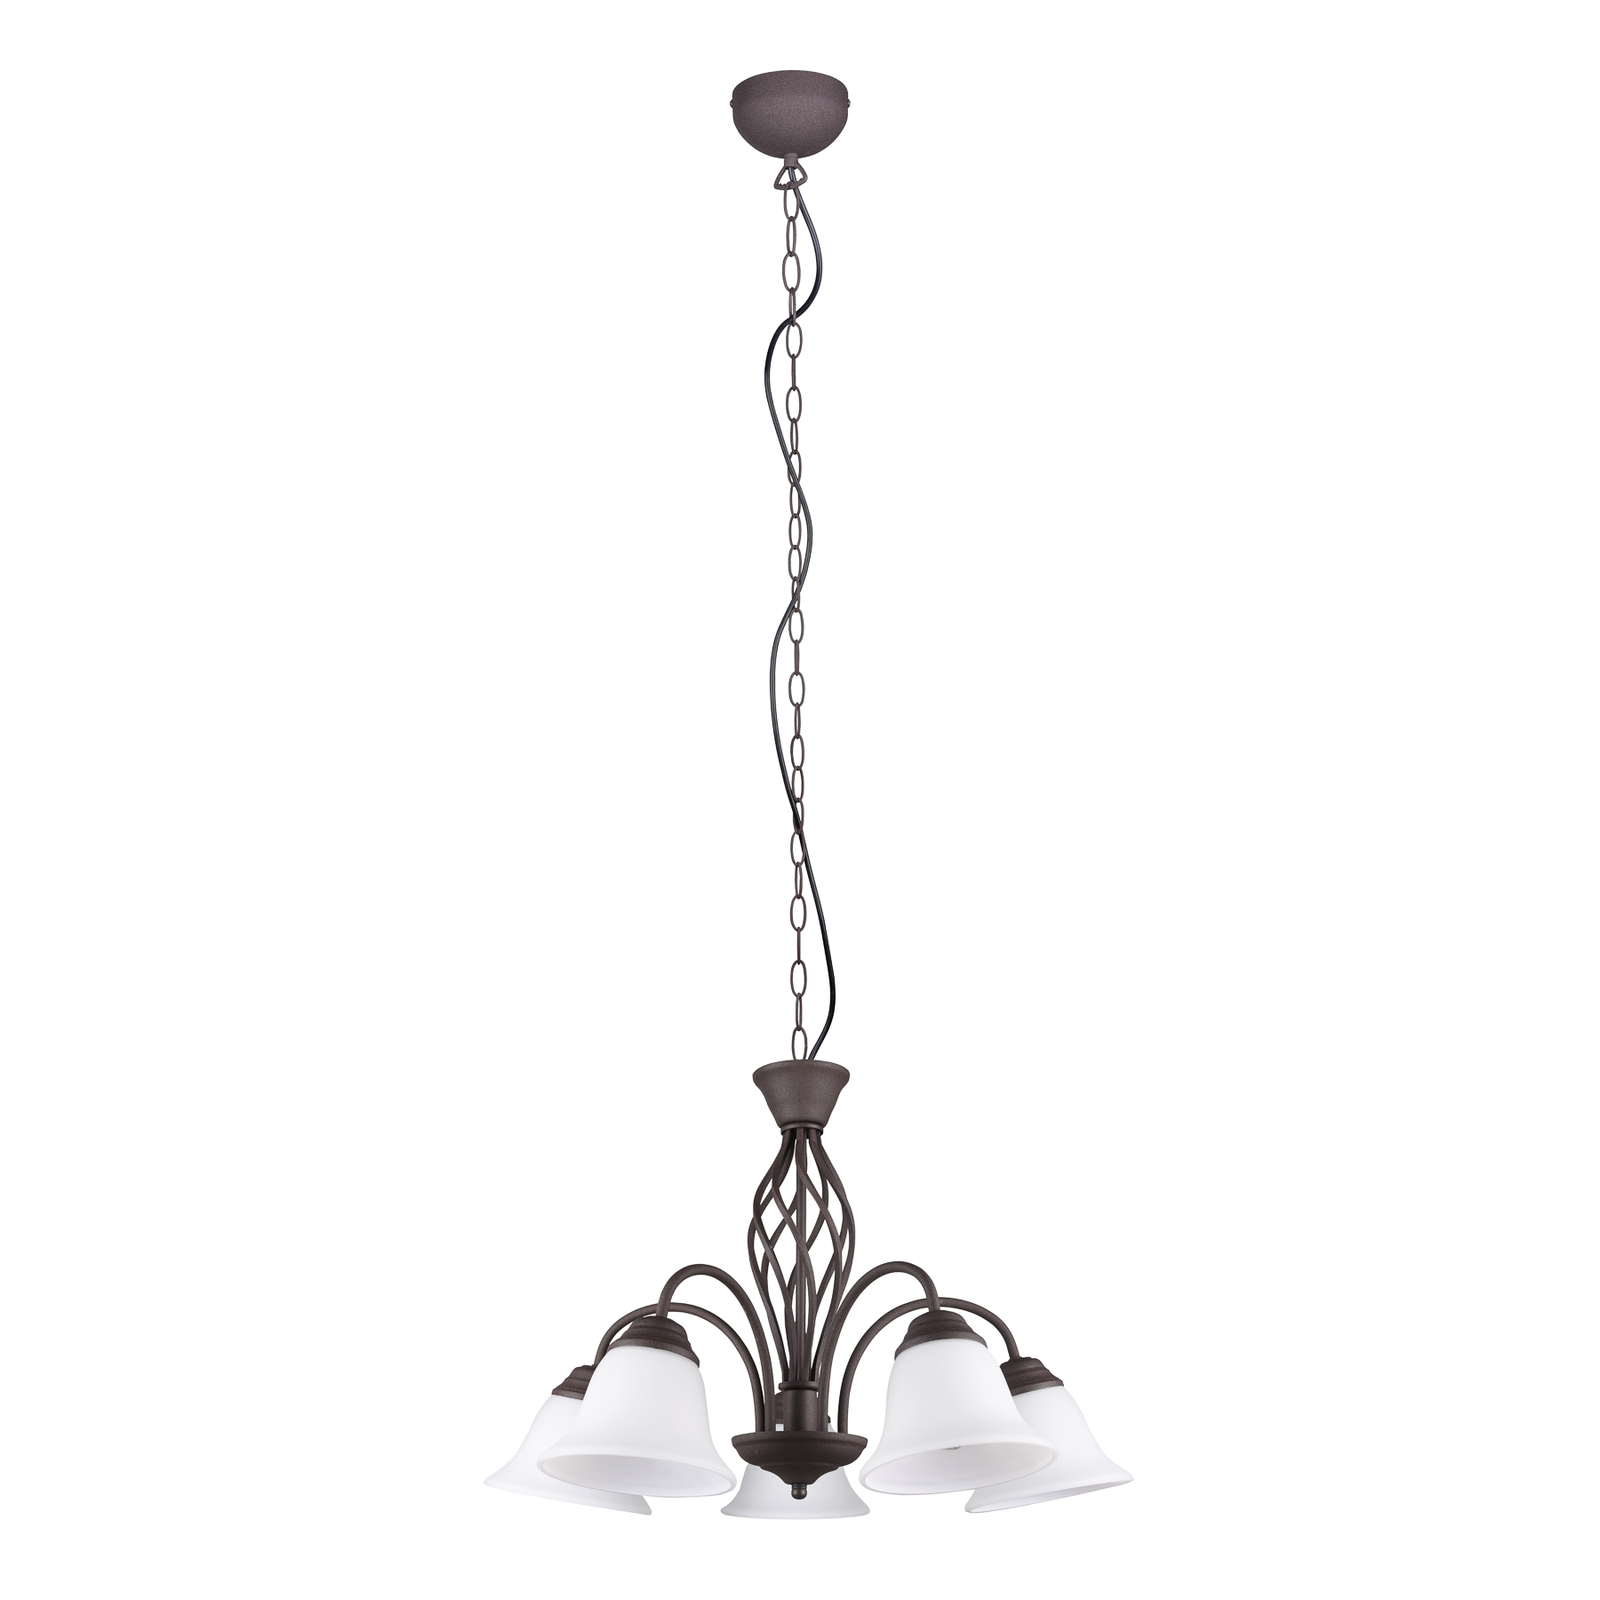 Hanglamp Rustica, roestkleuren, 5-lamps